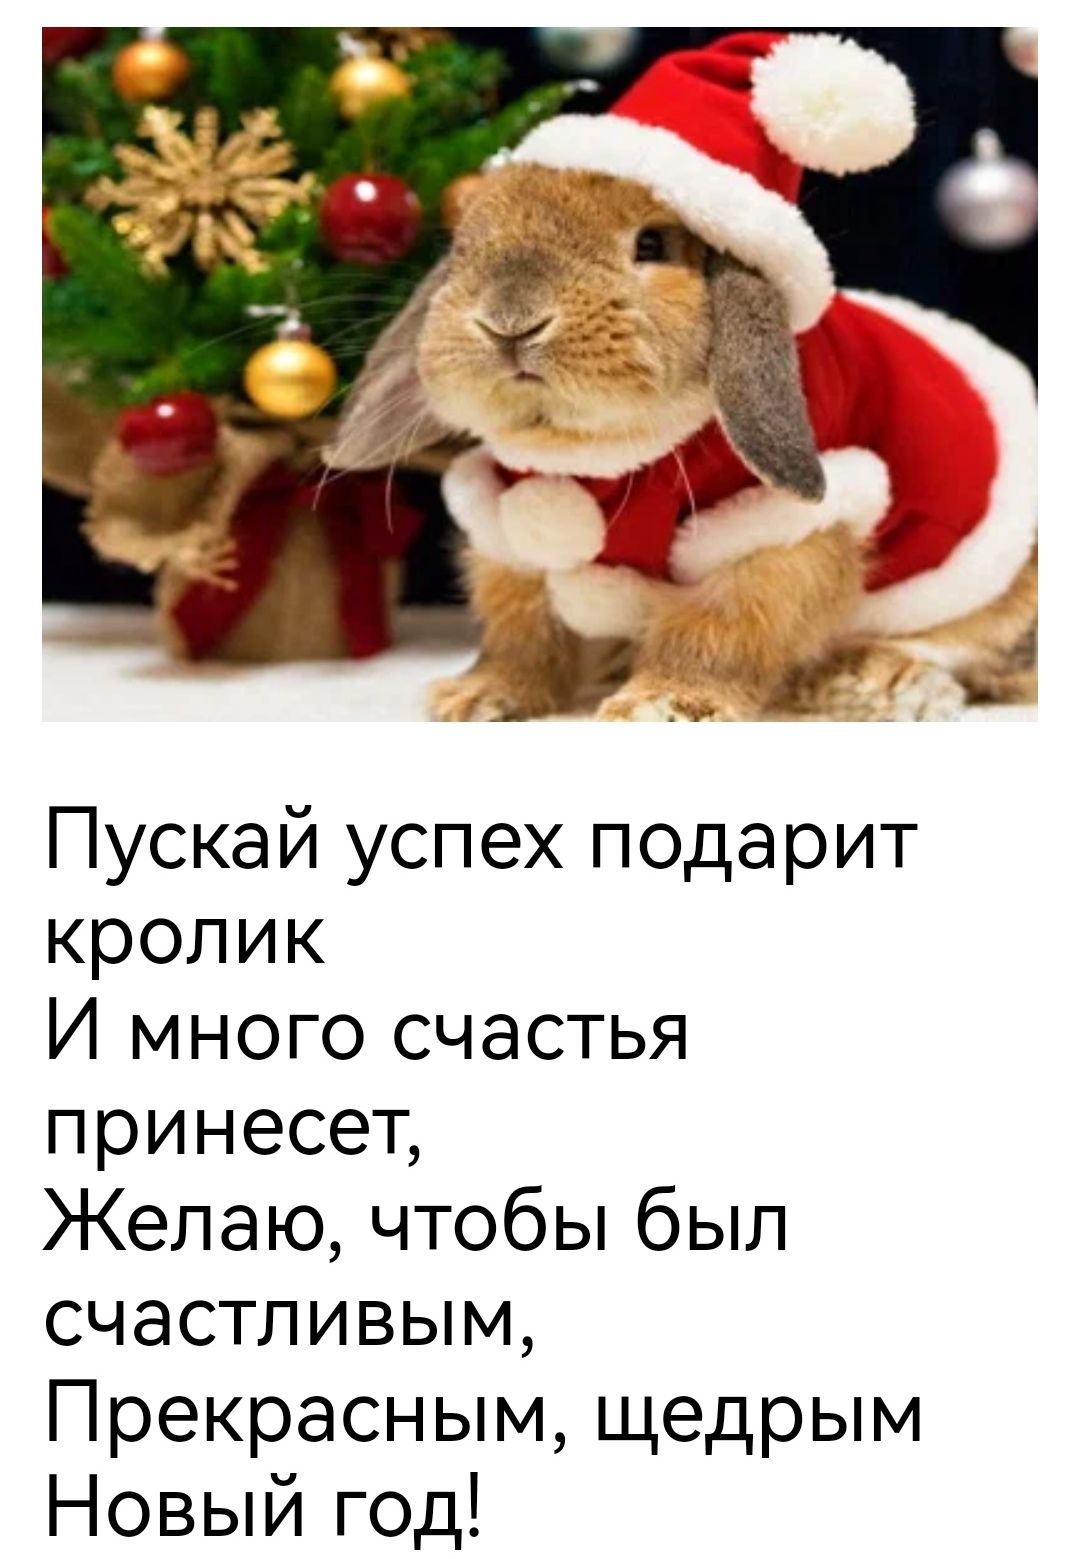 Пускай успех подарит кролик И много счастья принесет Келаючто6ьпбьш счастливым Прекраснымщедрым Новыйгод